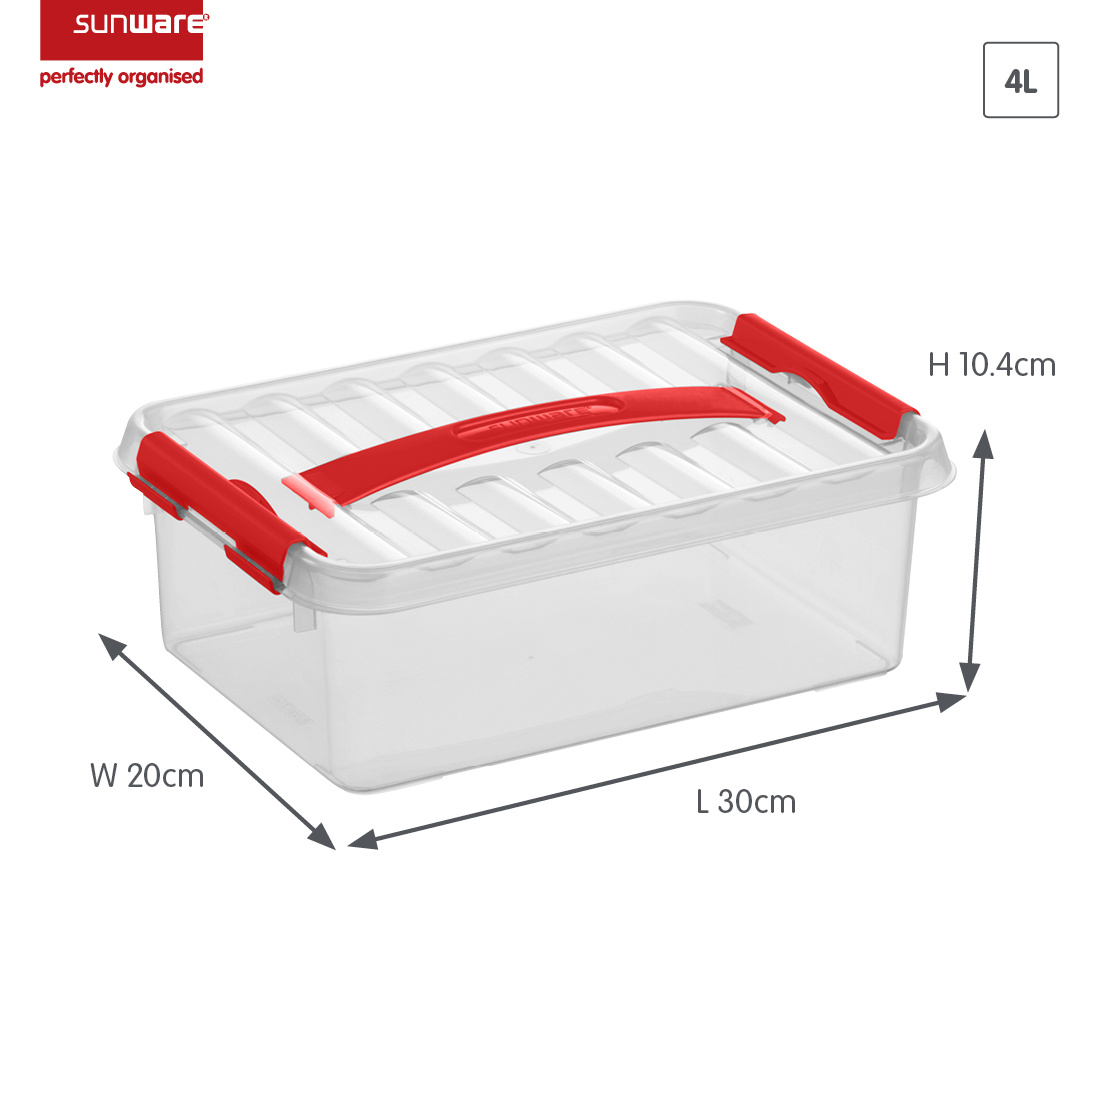 Q-line boîte de rangement 4L transparent rouge